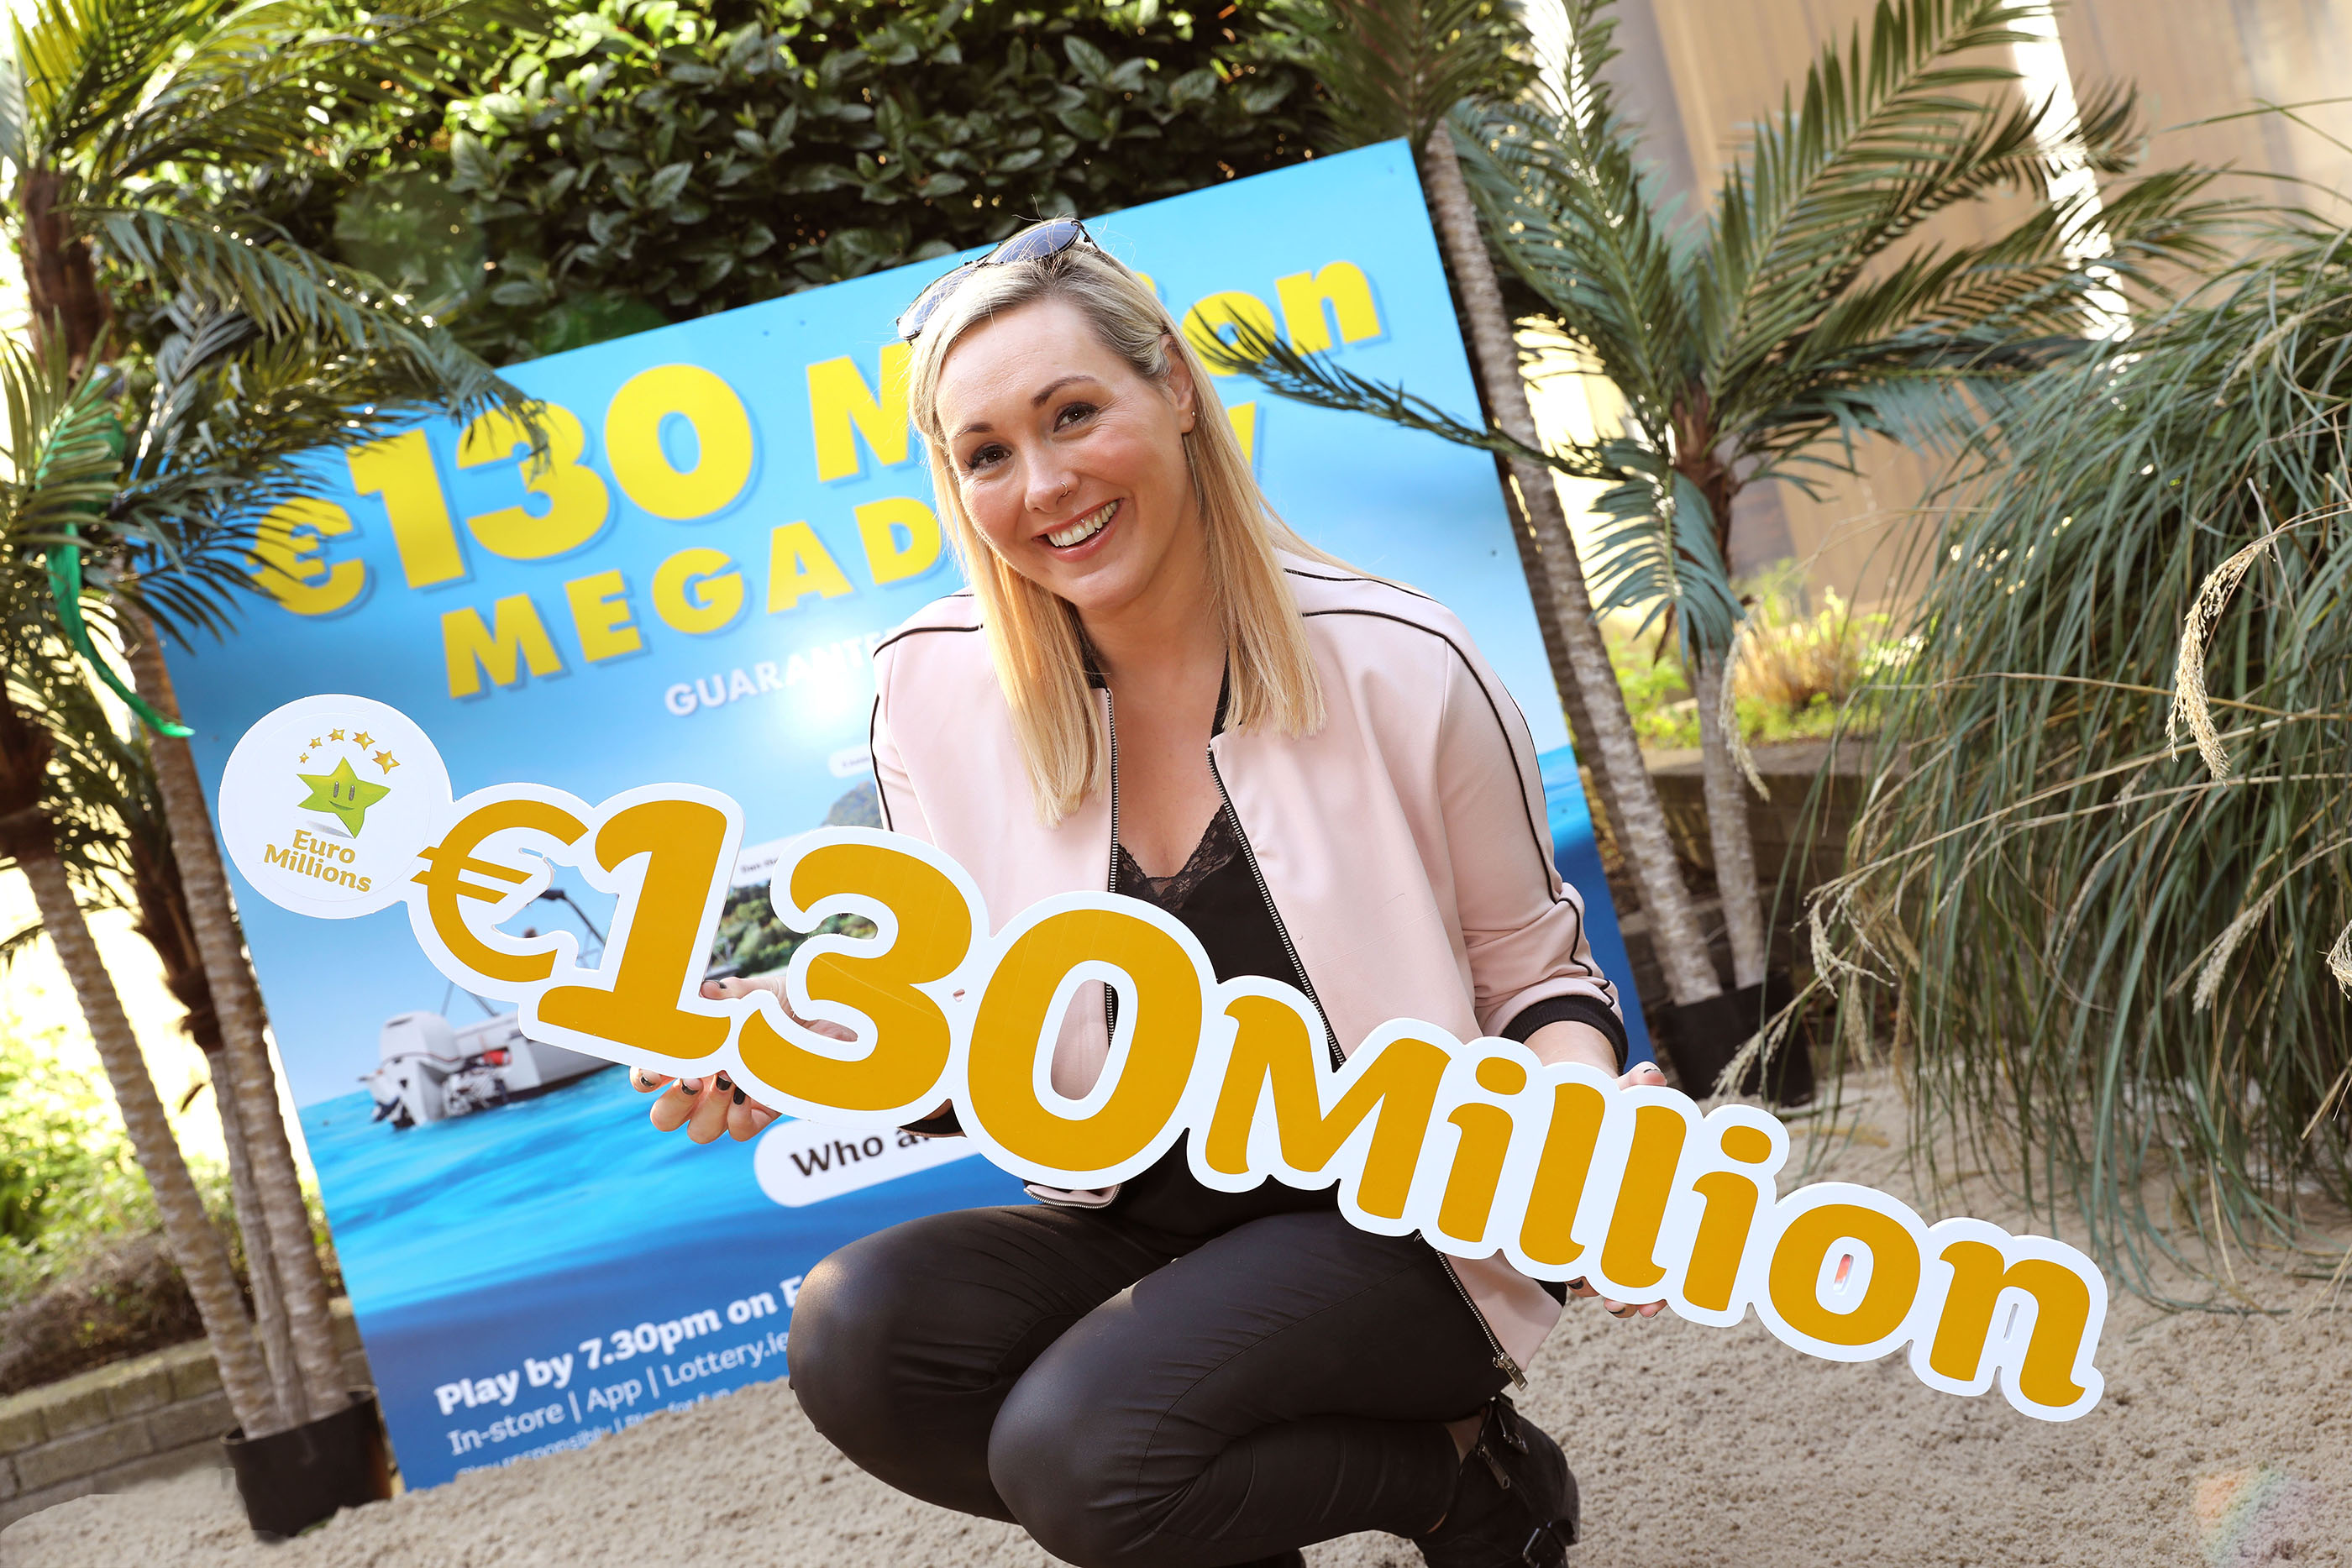 lotto euromillions jackpot